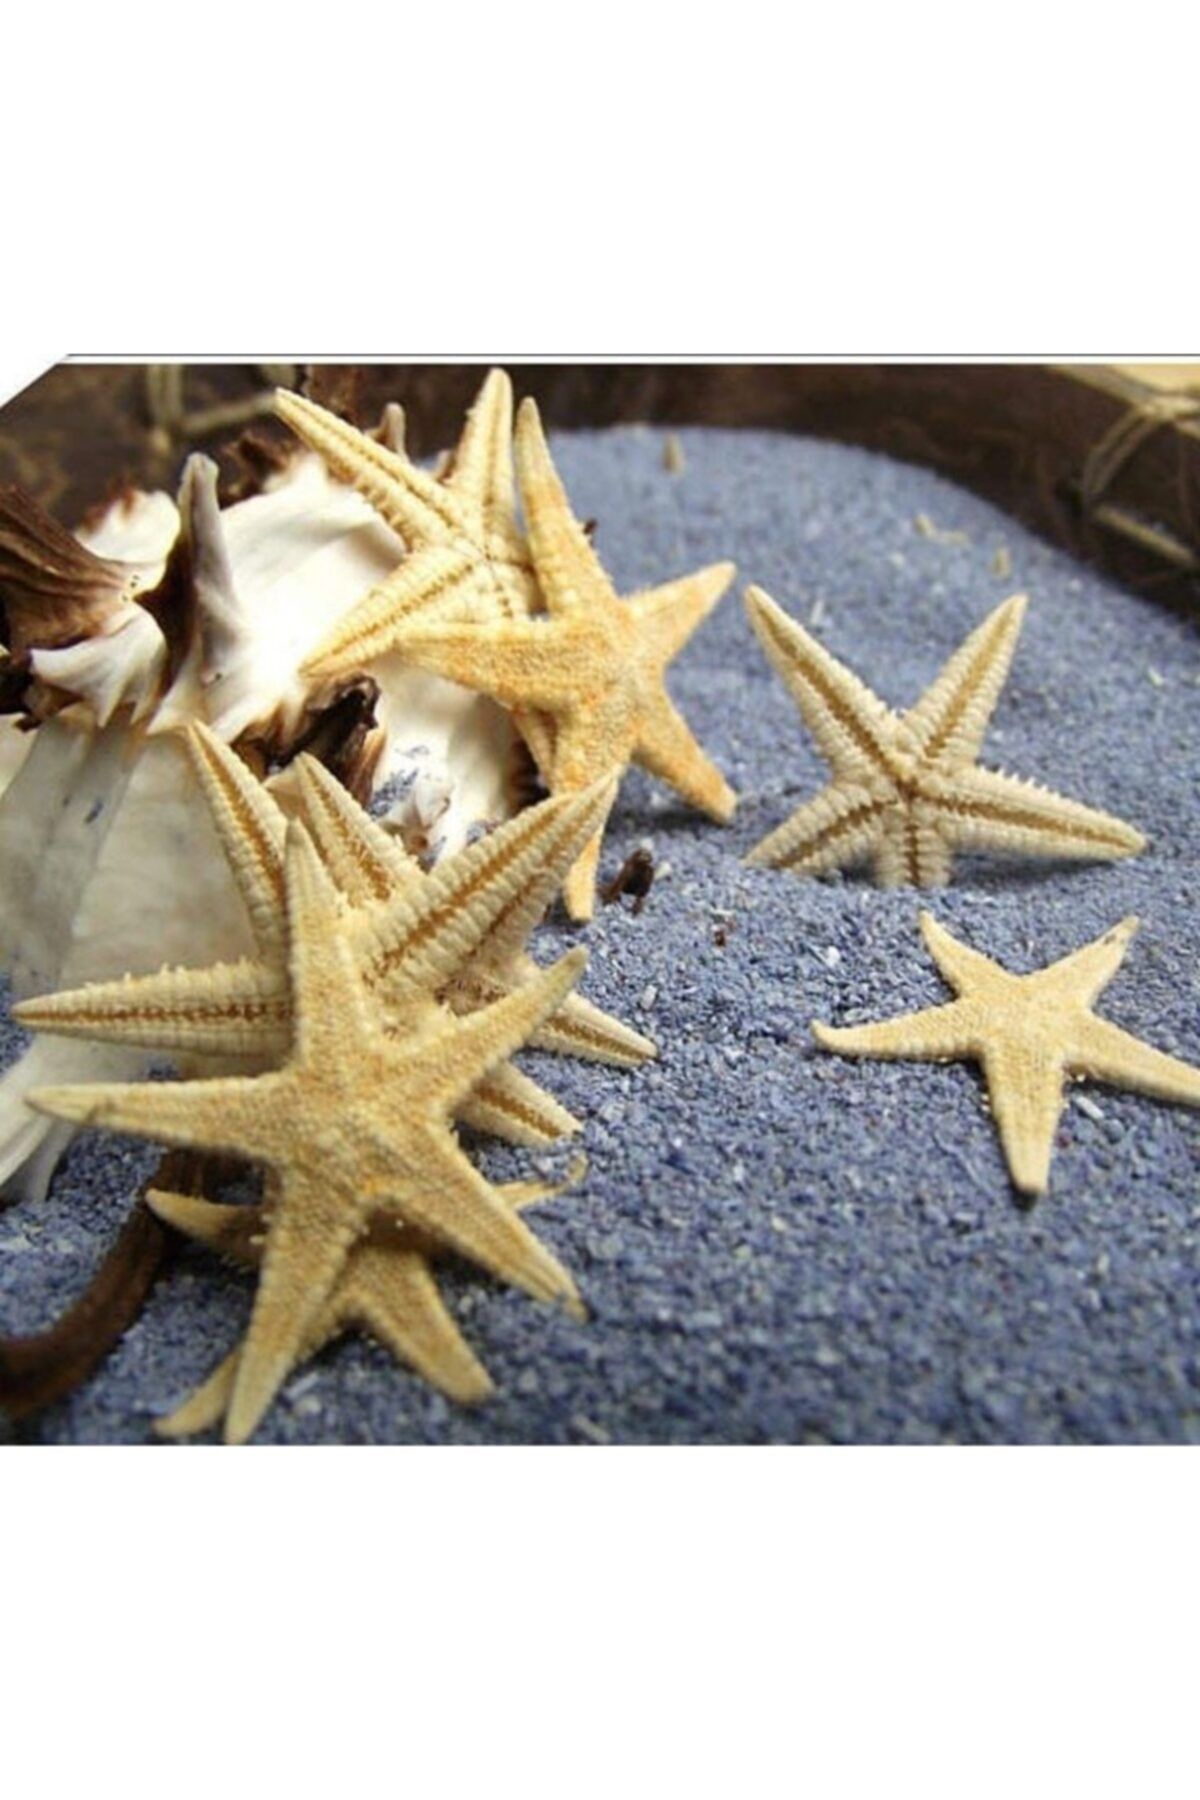 Aker Hediyelik Ucuz Deniz Yıldızı 25 Adet 4cmx8cm Hesaplı Deniz Yıldızları Hobi El Işi Ürünleri Vıp Denizyıldızı